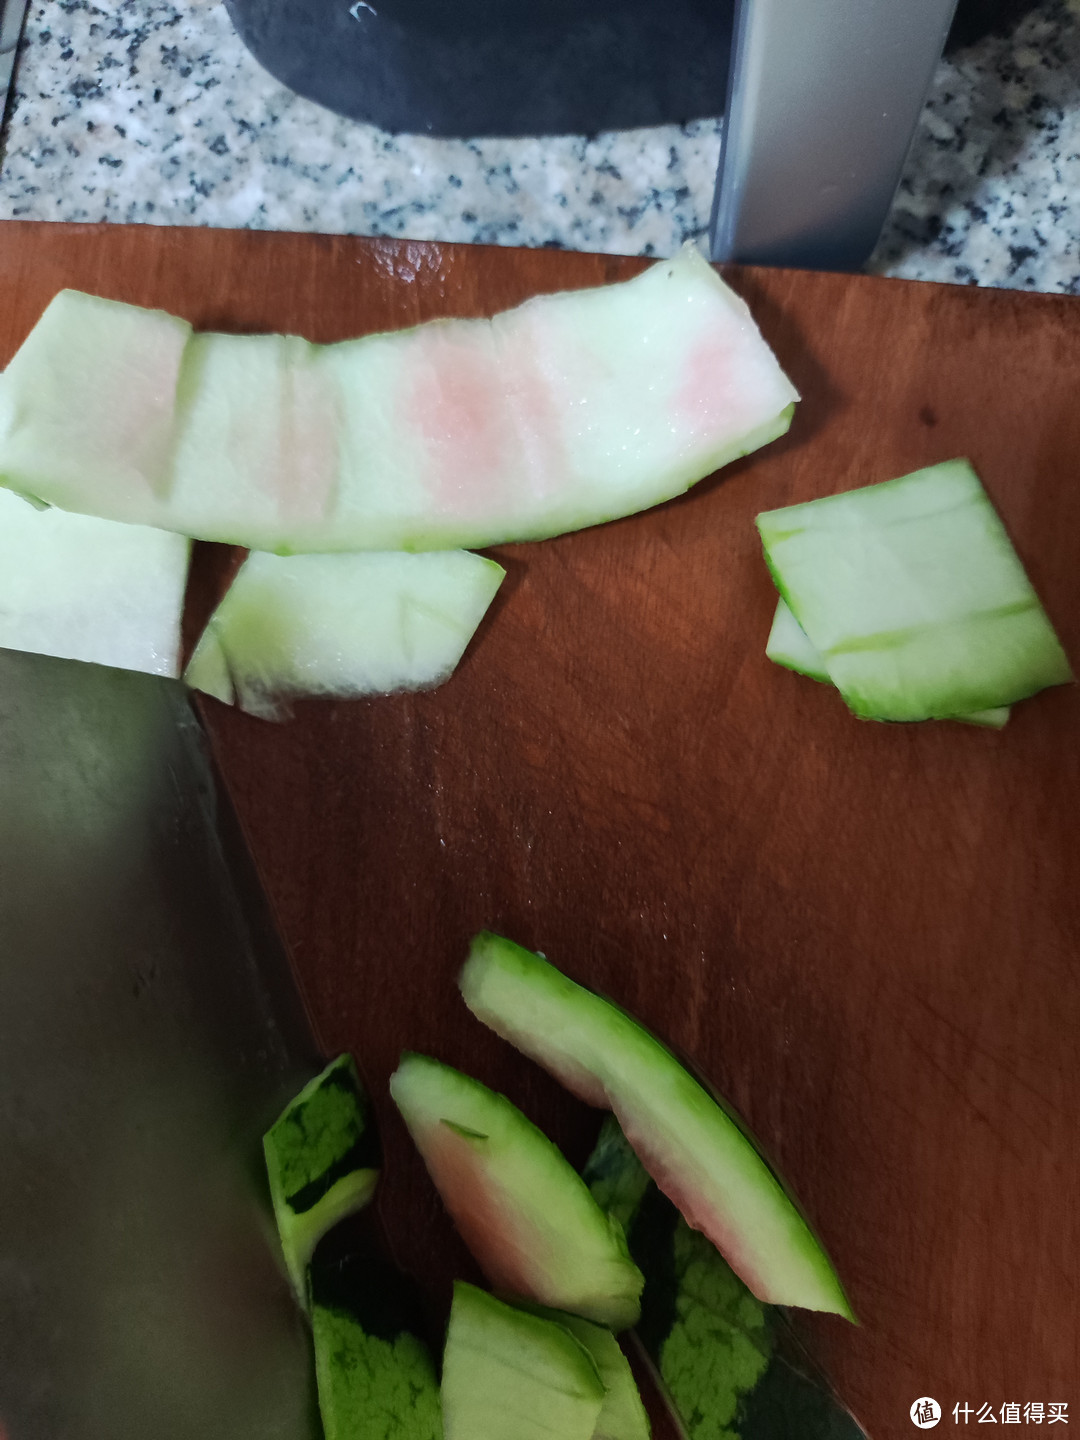 上次榨了西瓜汁，觉得西瓜皮丢了浪费，于是做了个炒西瓜皮